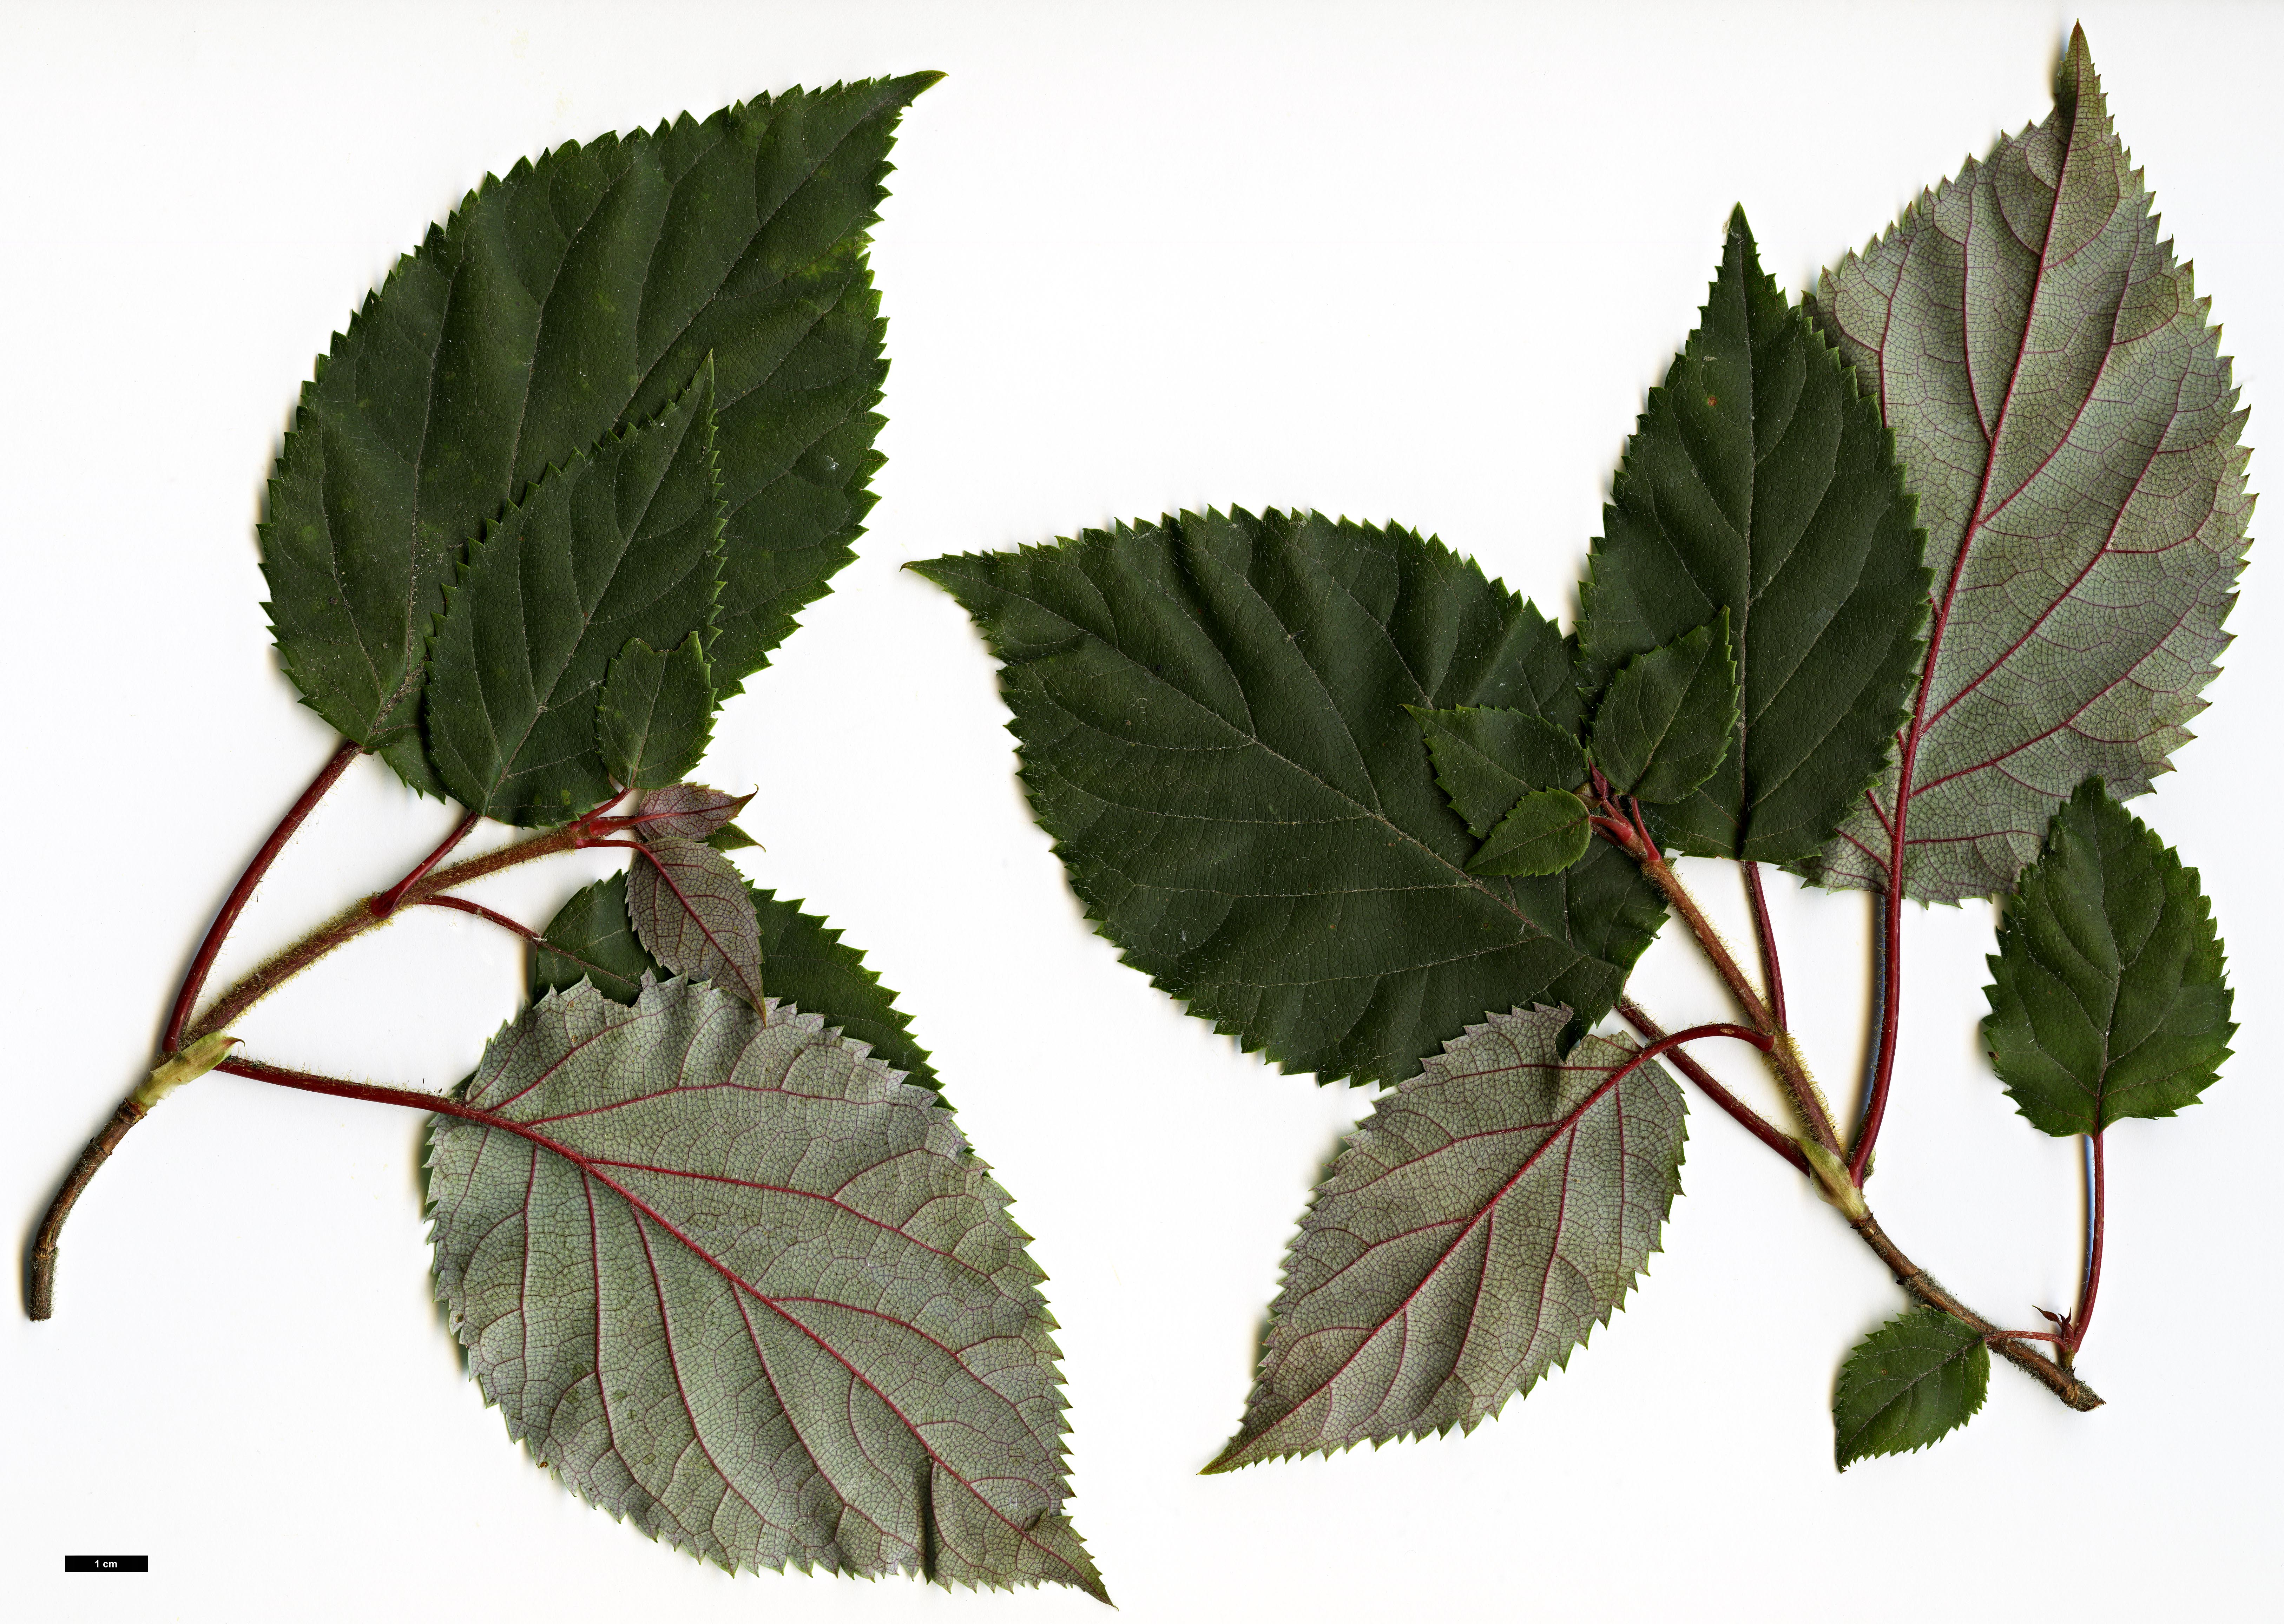 High resolution image: Family: Hydrangeaceae - Genus: Hydrangea - Taxon: anomala - SpeciesSub: subsp. petiolaris